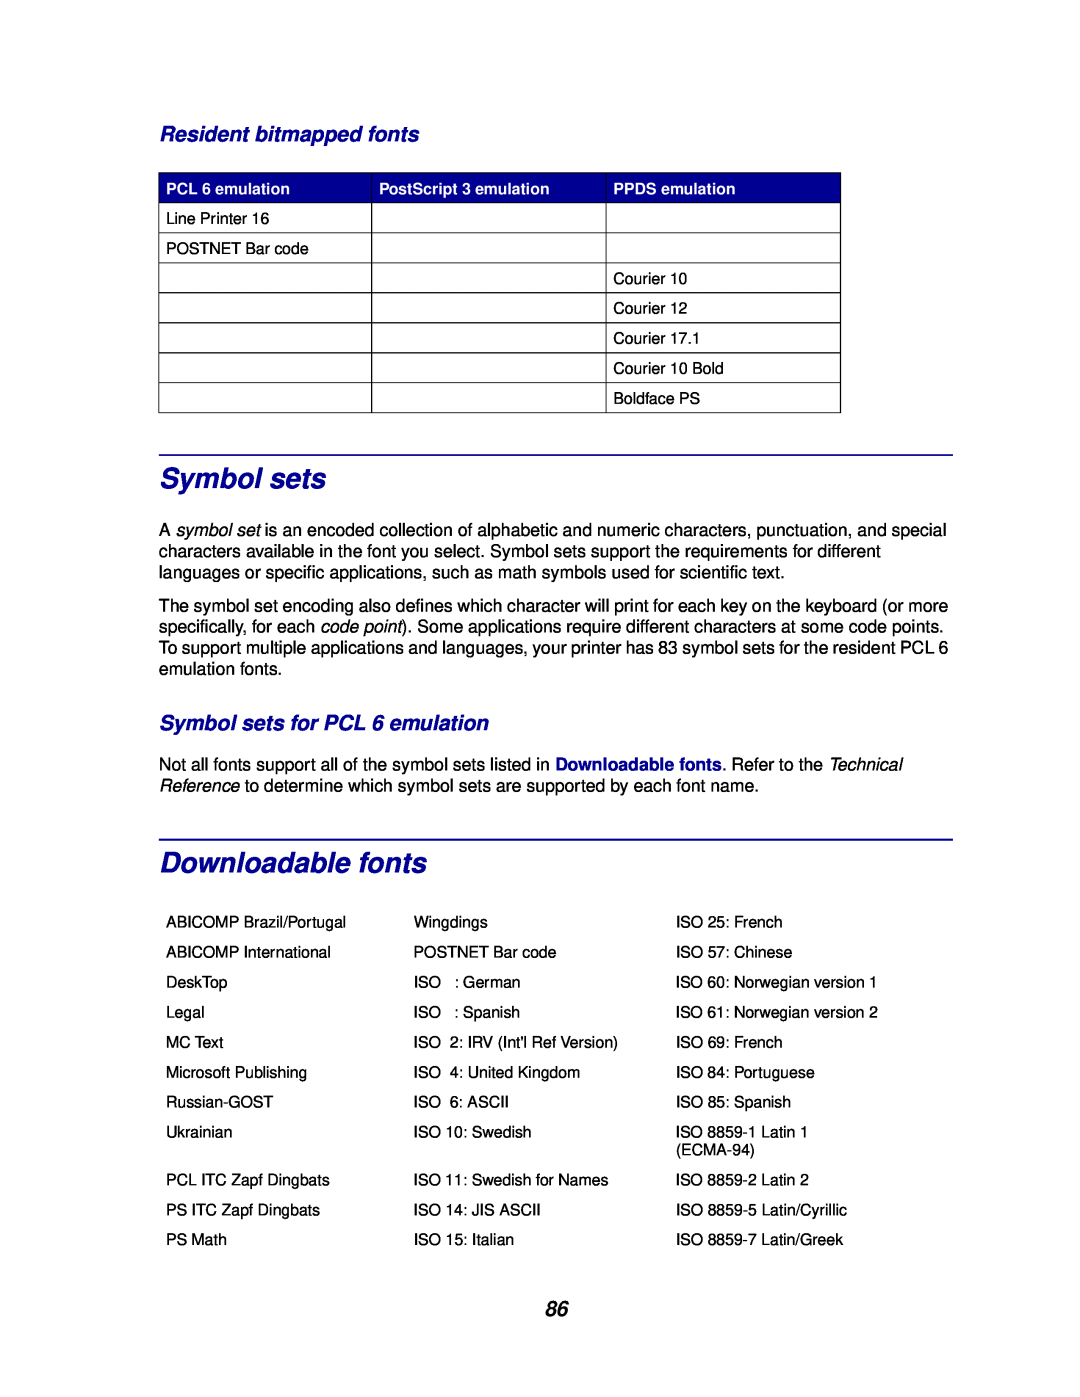 Lexmark 812 manual Downloadable fonts, Resident bitmapped fonts, Symbol sets for PCL 6 emulation 